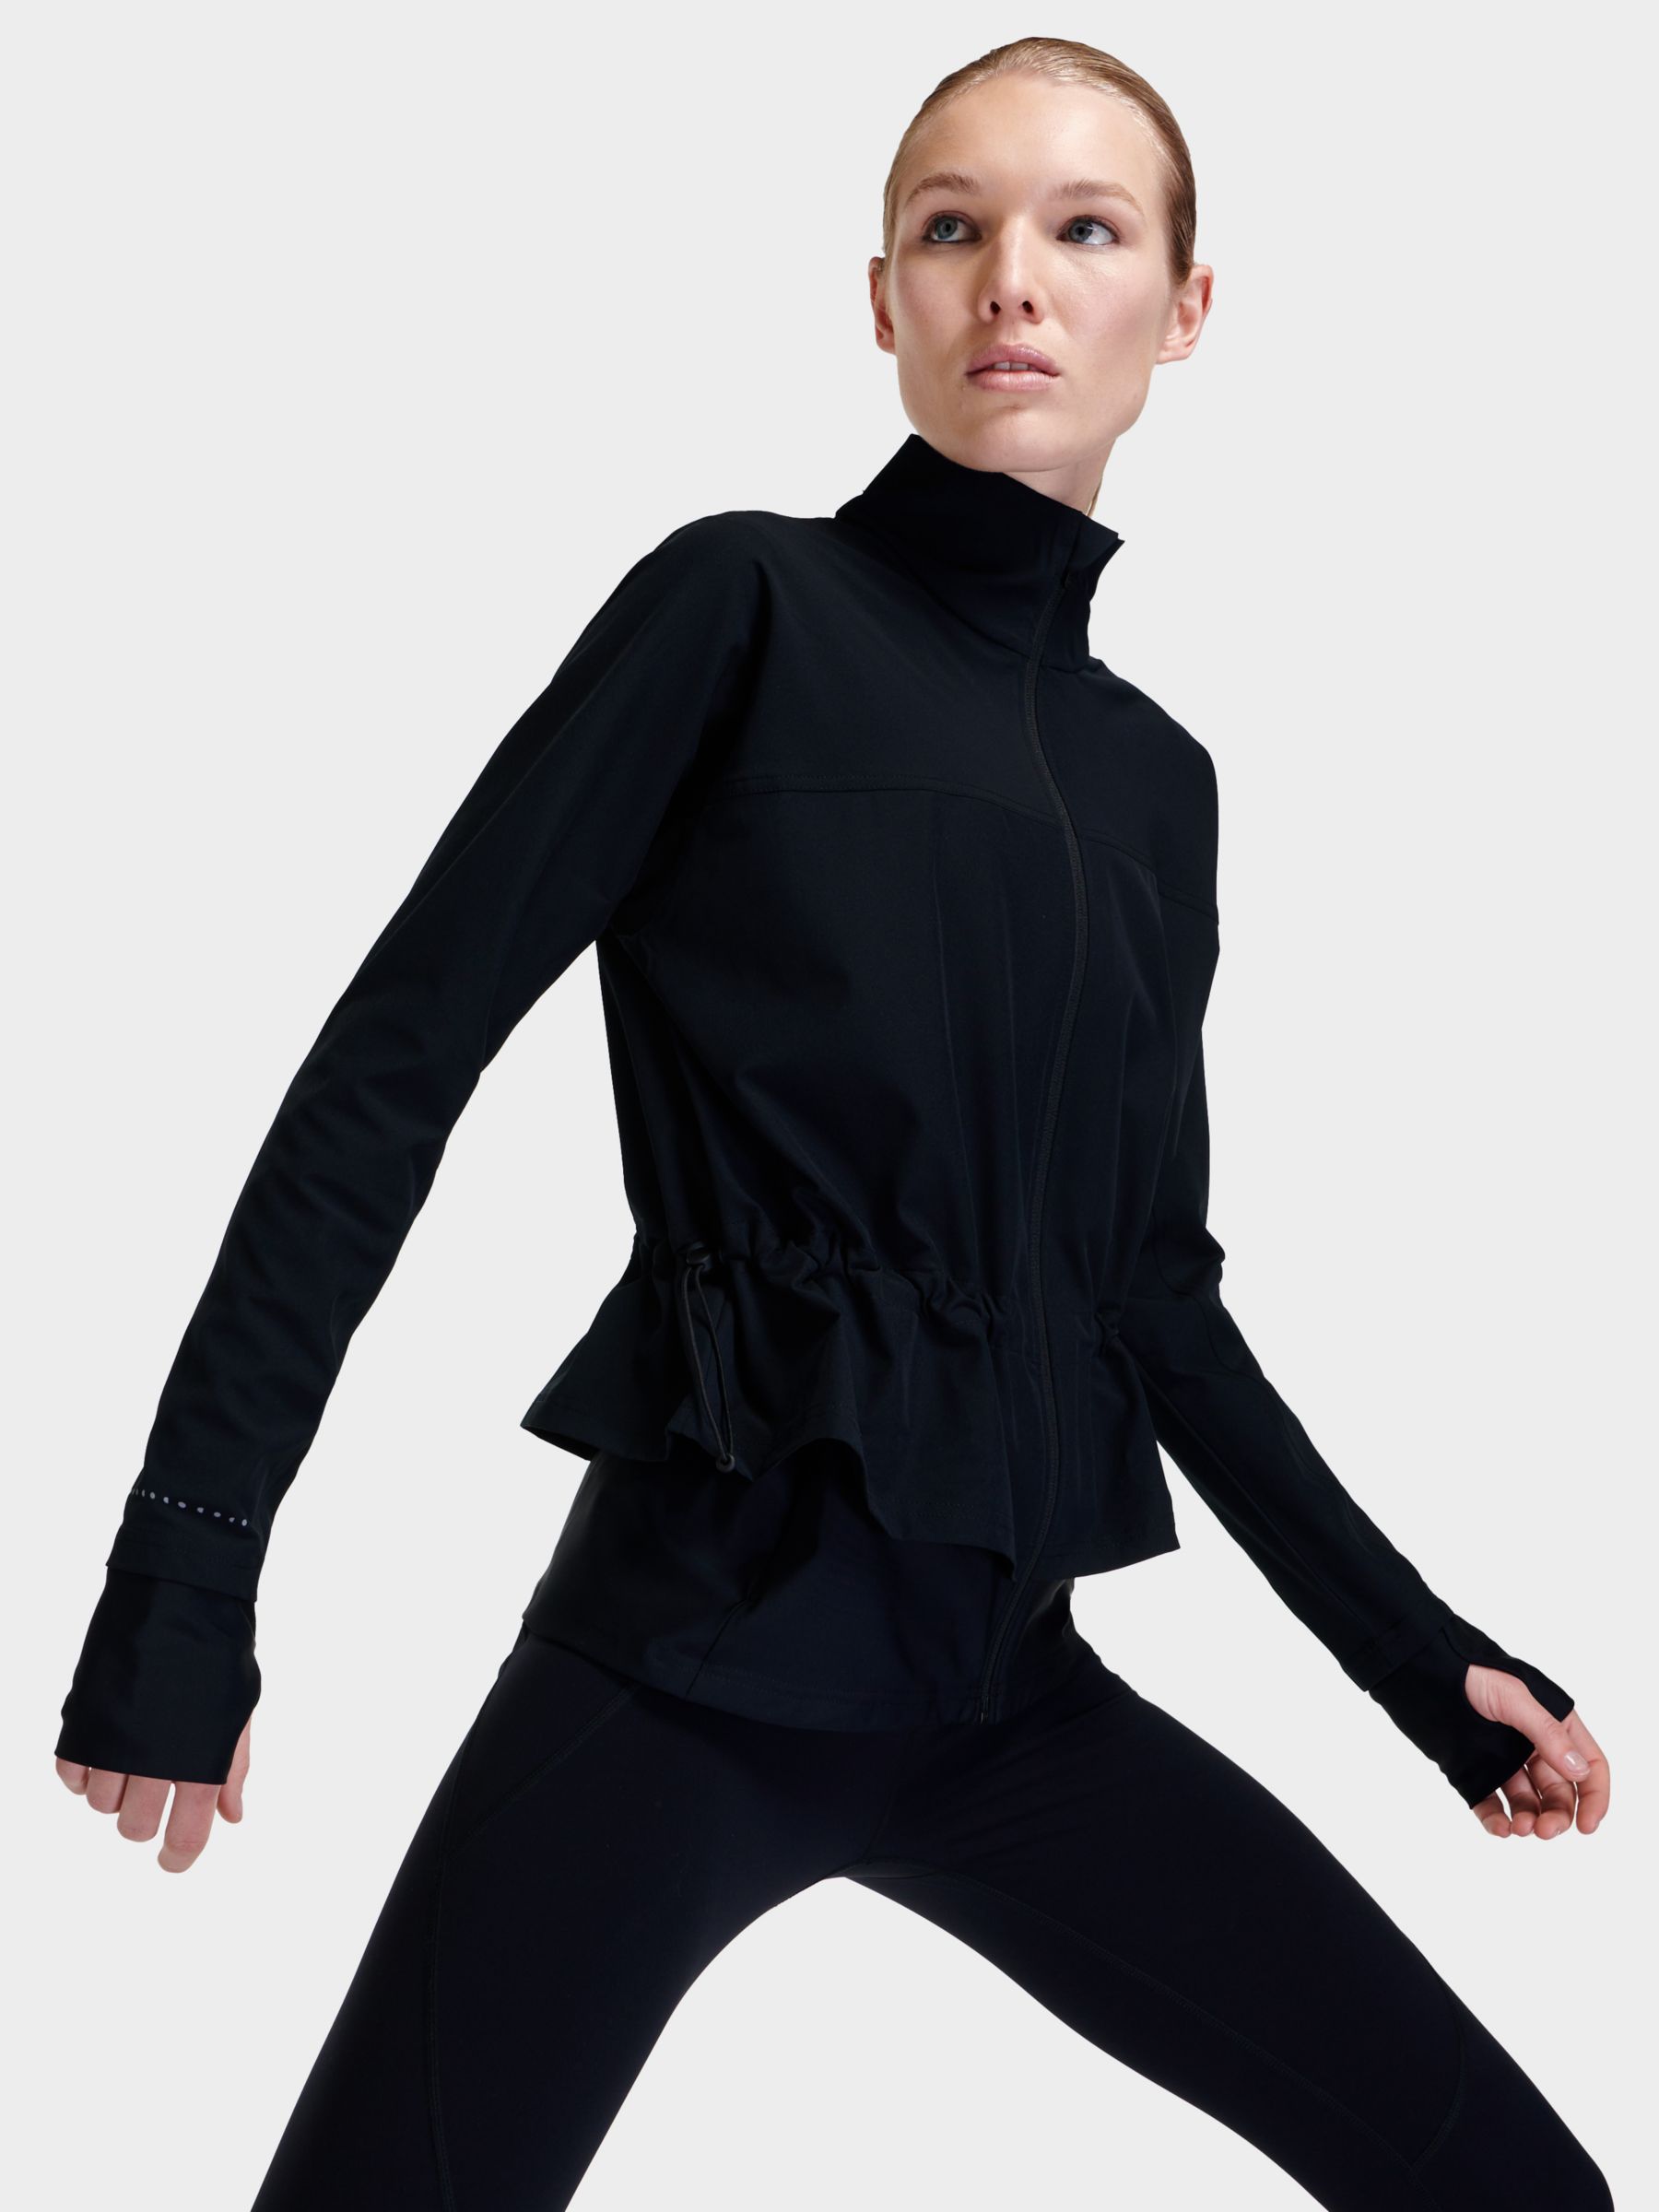 Black Mesh Zip Up Mock Turtleneck Activewear Jacket Tangerine Women's MEDIUM